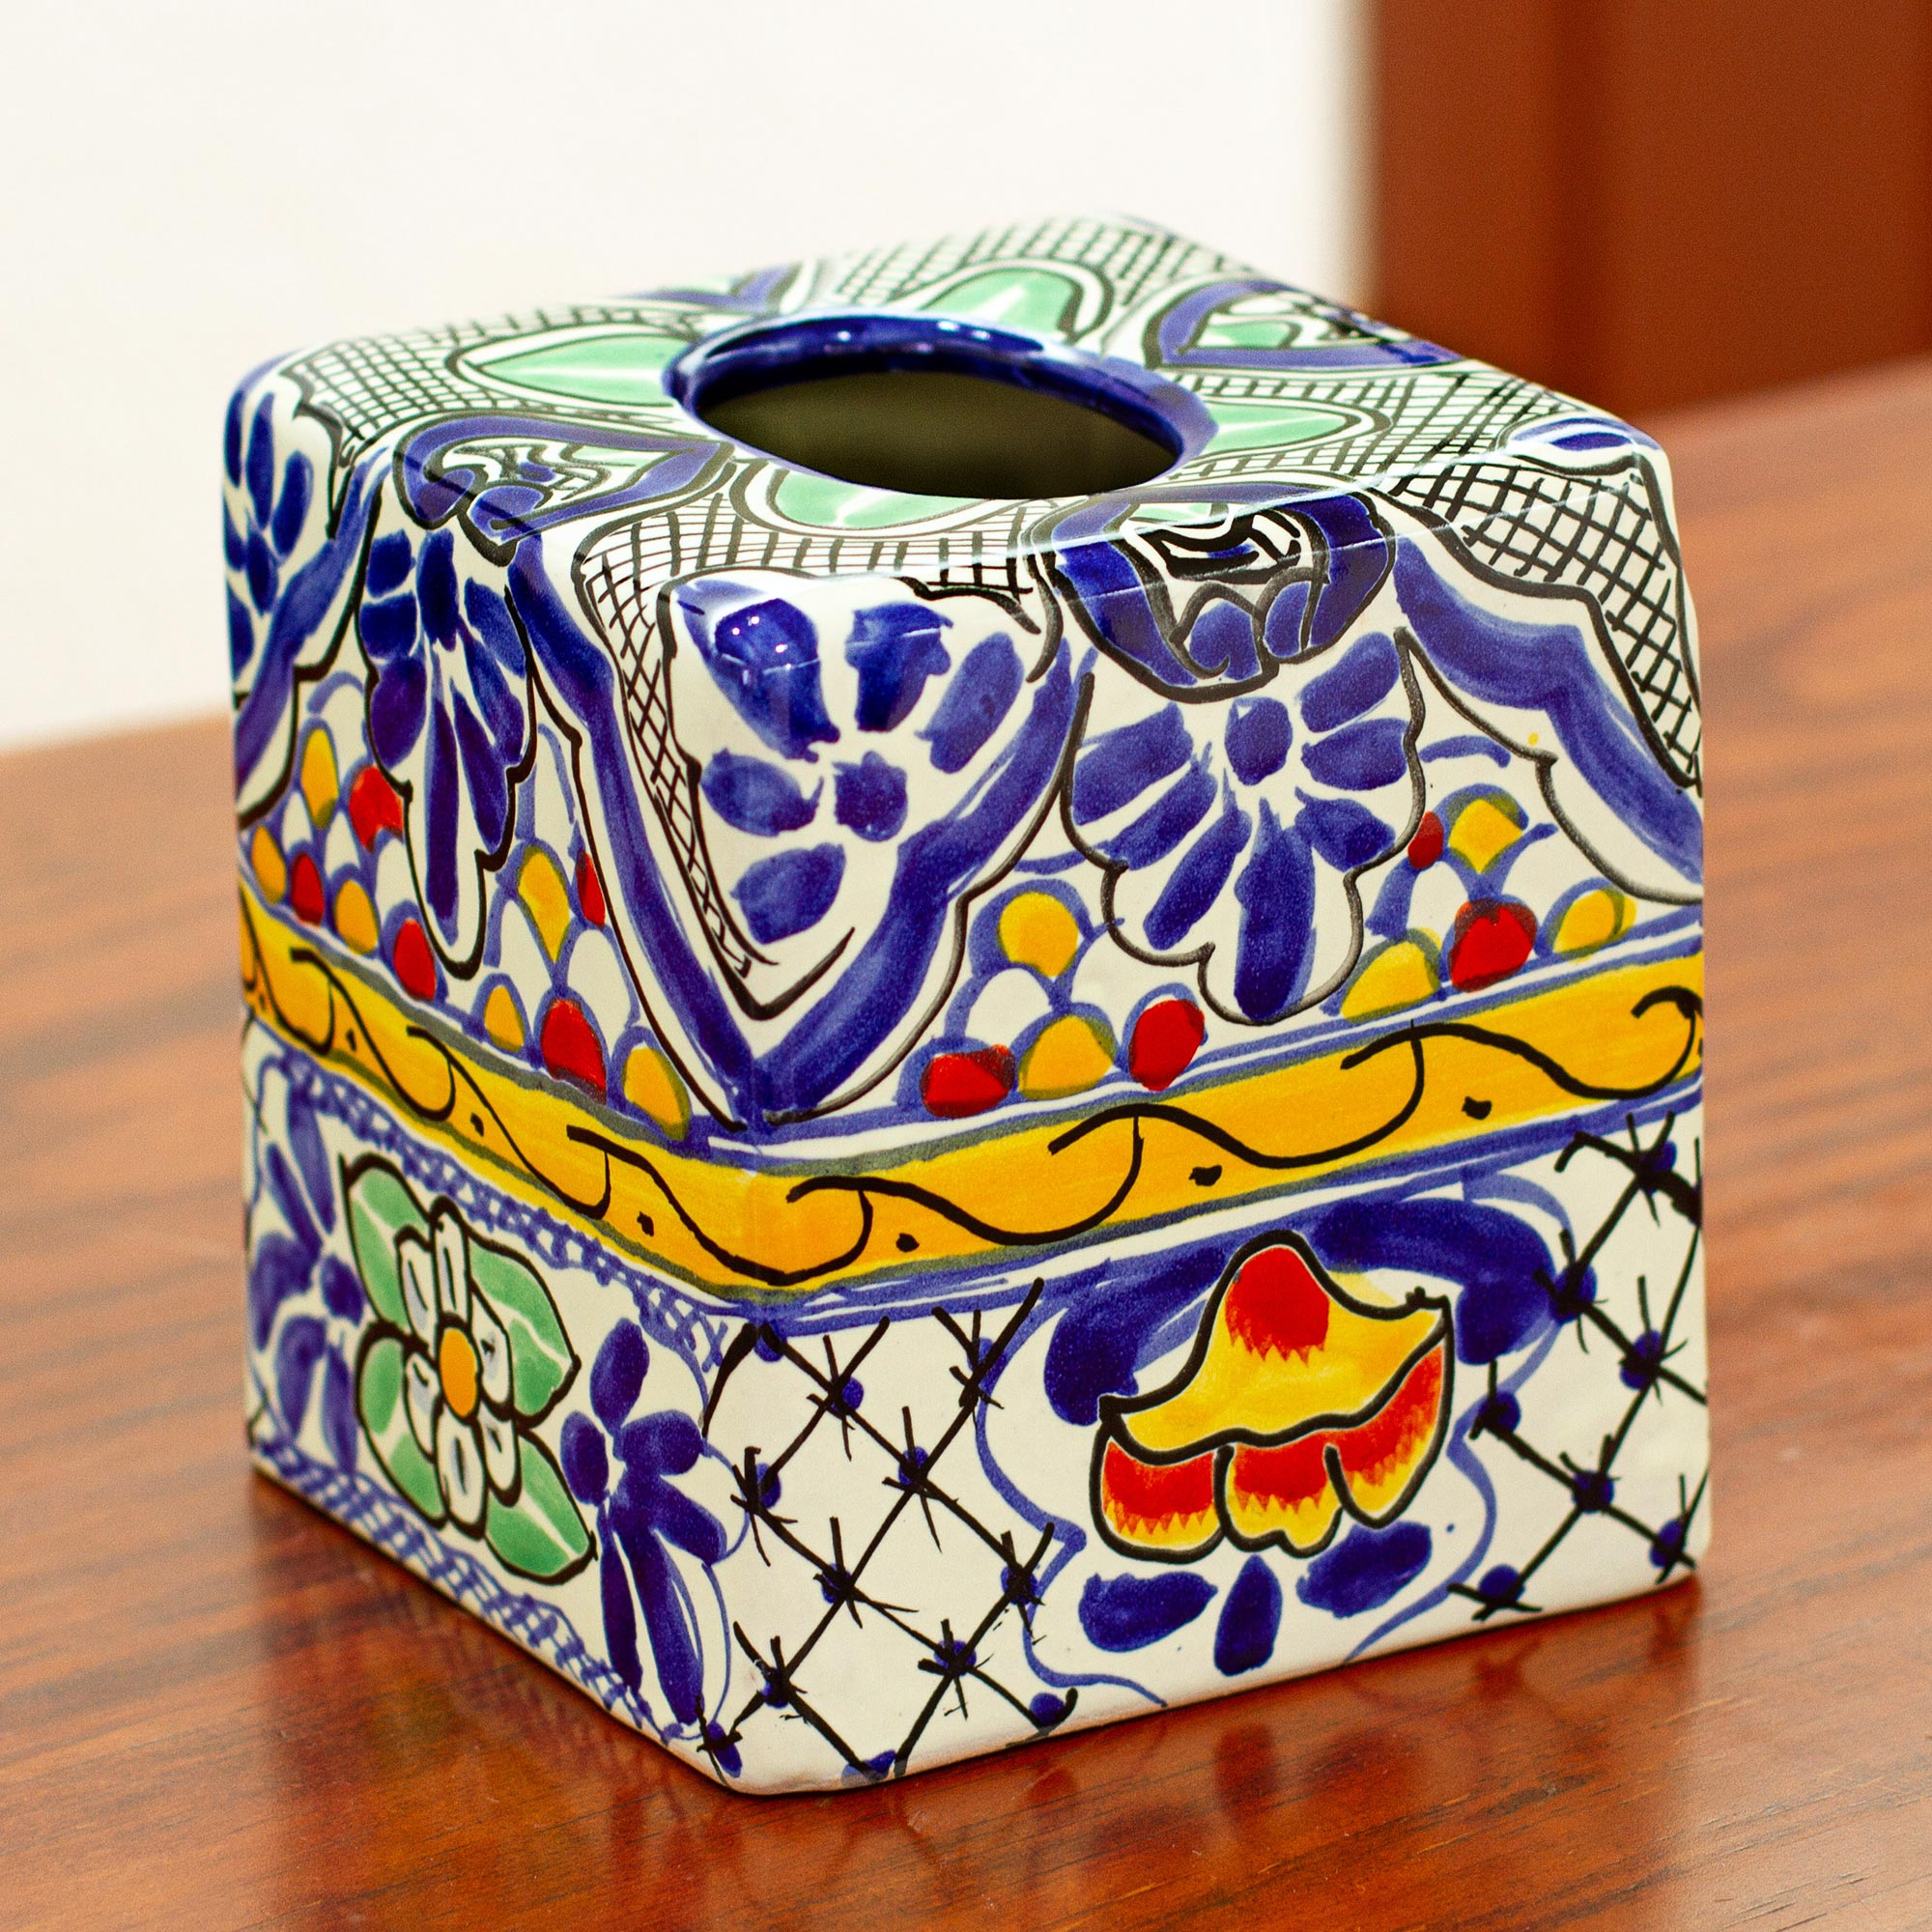 Modern Mosaic Ceramic Tissue Boxes European Simple Creativity